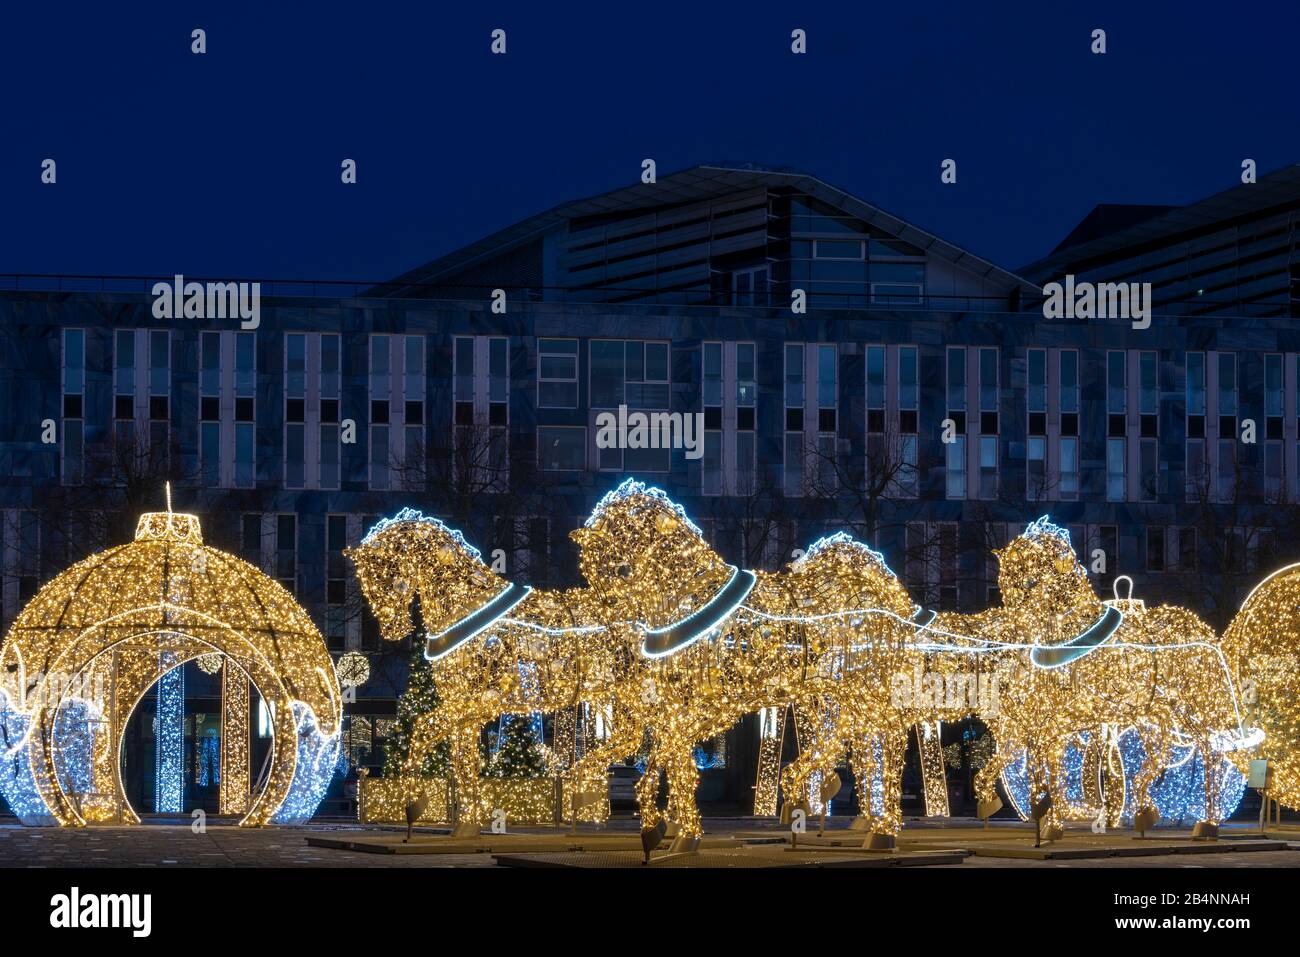 Deutschland, Sachsen-Anhalt, Magdeburg, auf dem Domplatz stehen beleuchtete Weihnachtskugeln und Pferde, die den berühmten Magdeburger Halbkugelversuc Stock Photo